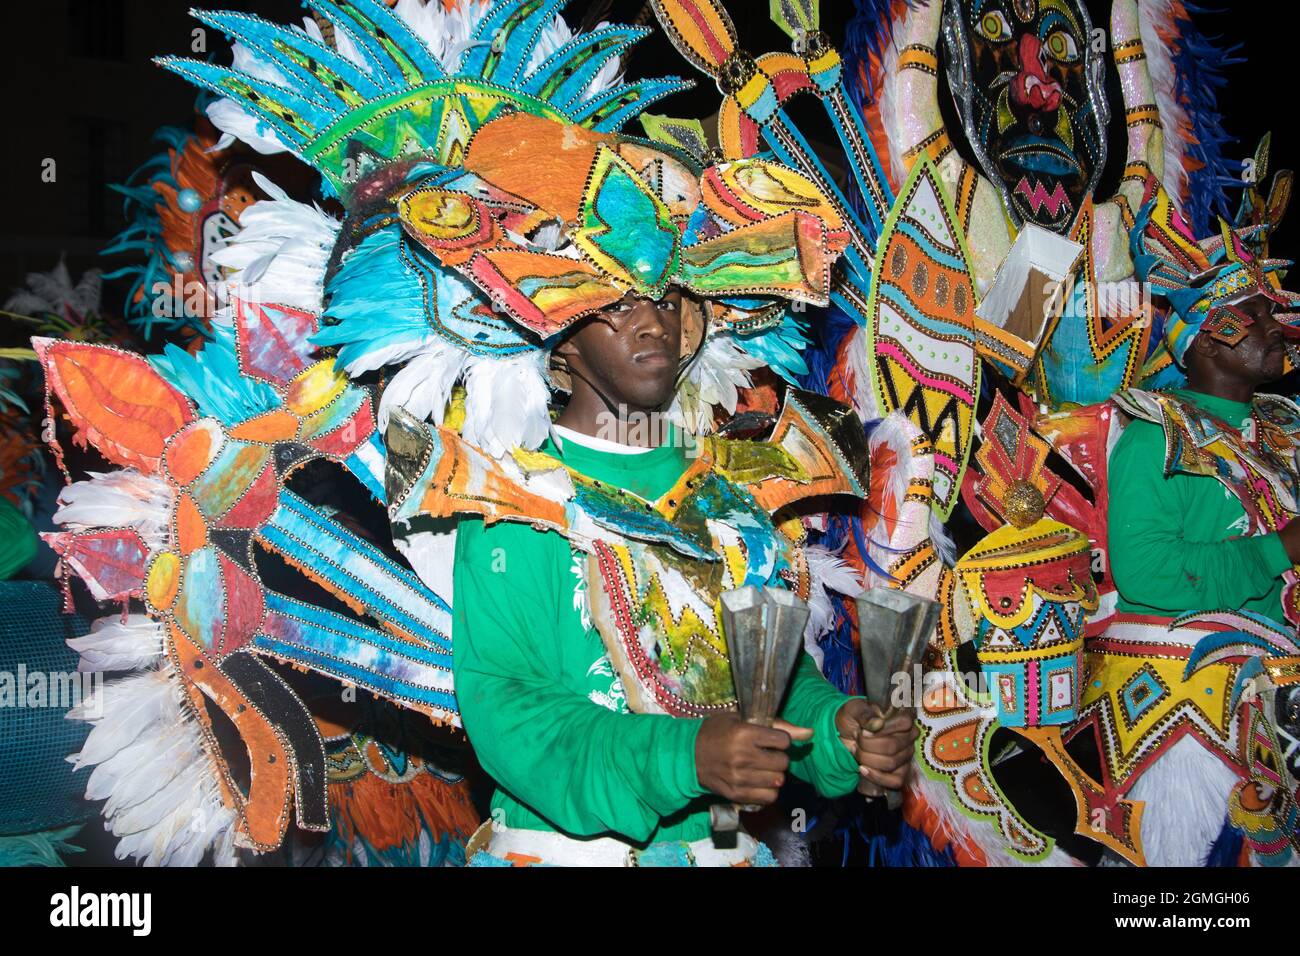 Junkanoo celebration in the streets of the Bahamas Stock Photo